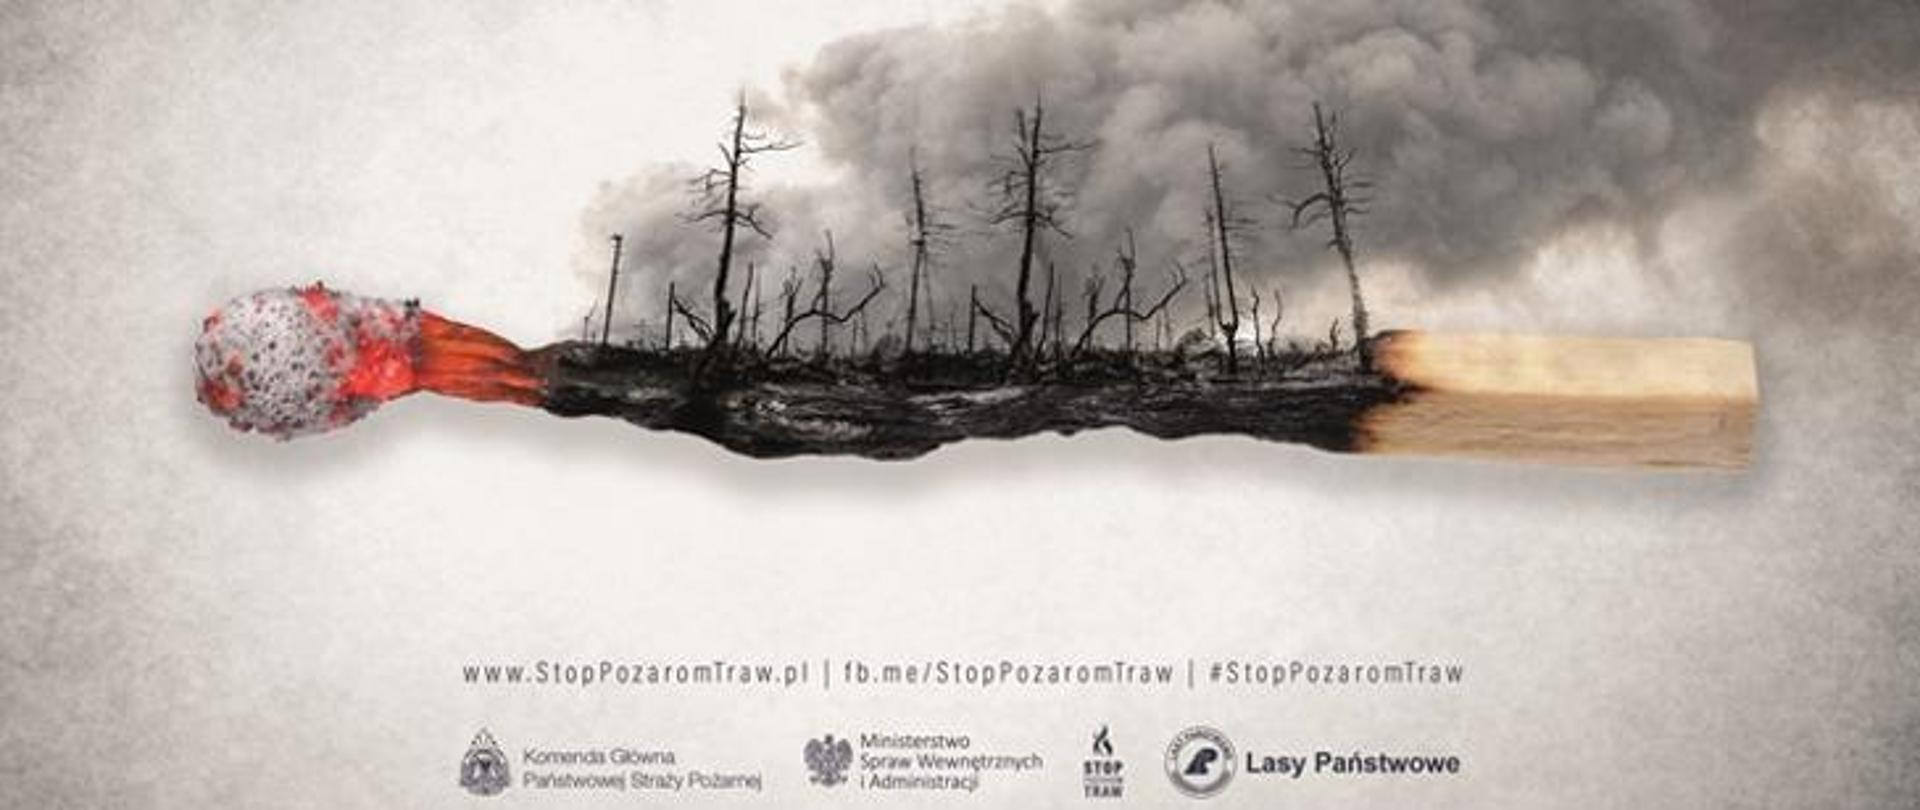 Plakat akcji Stop Pożarom Traw